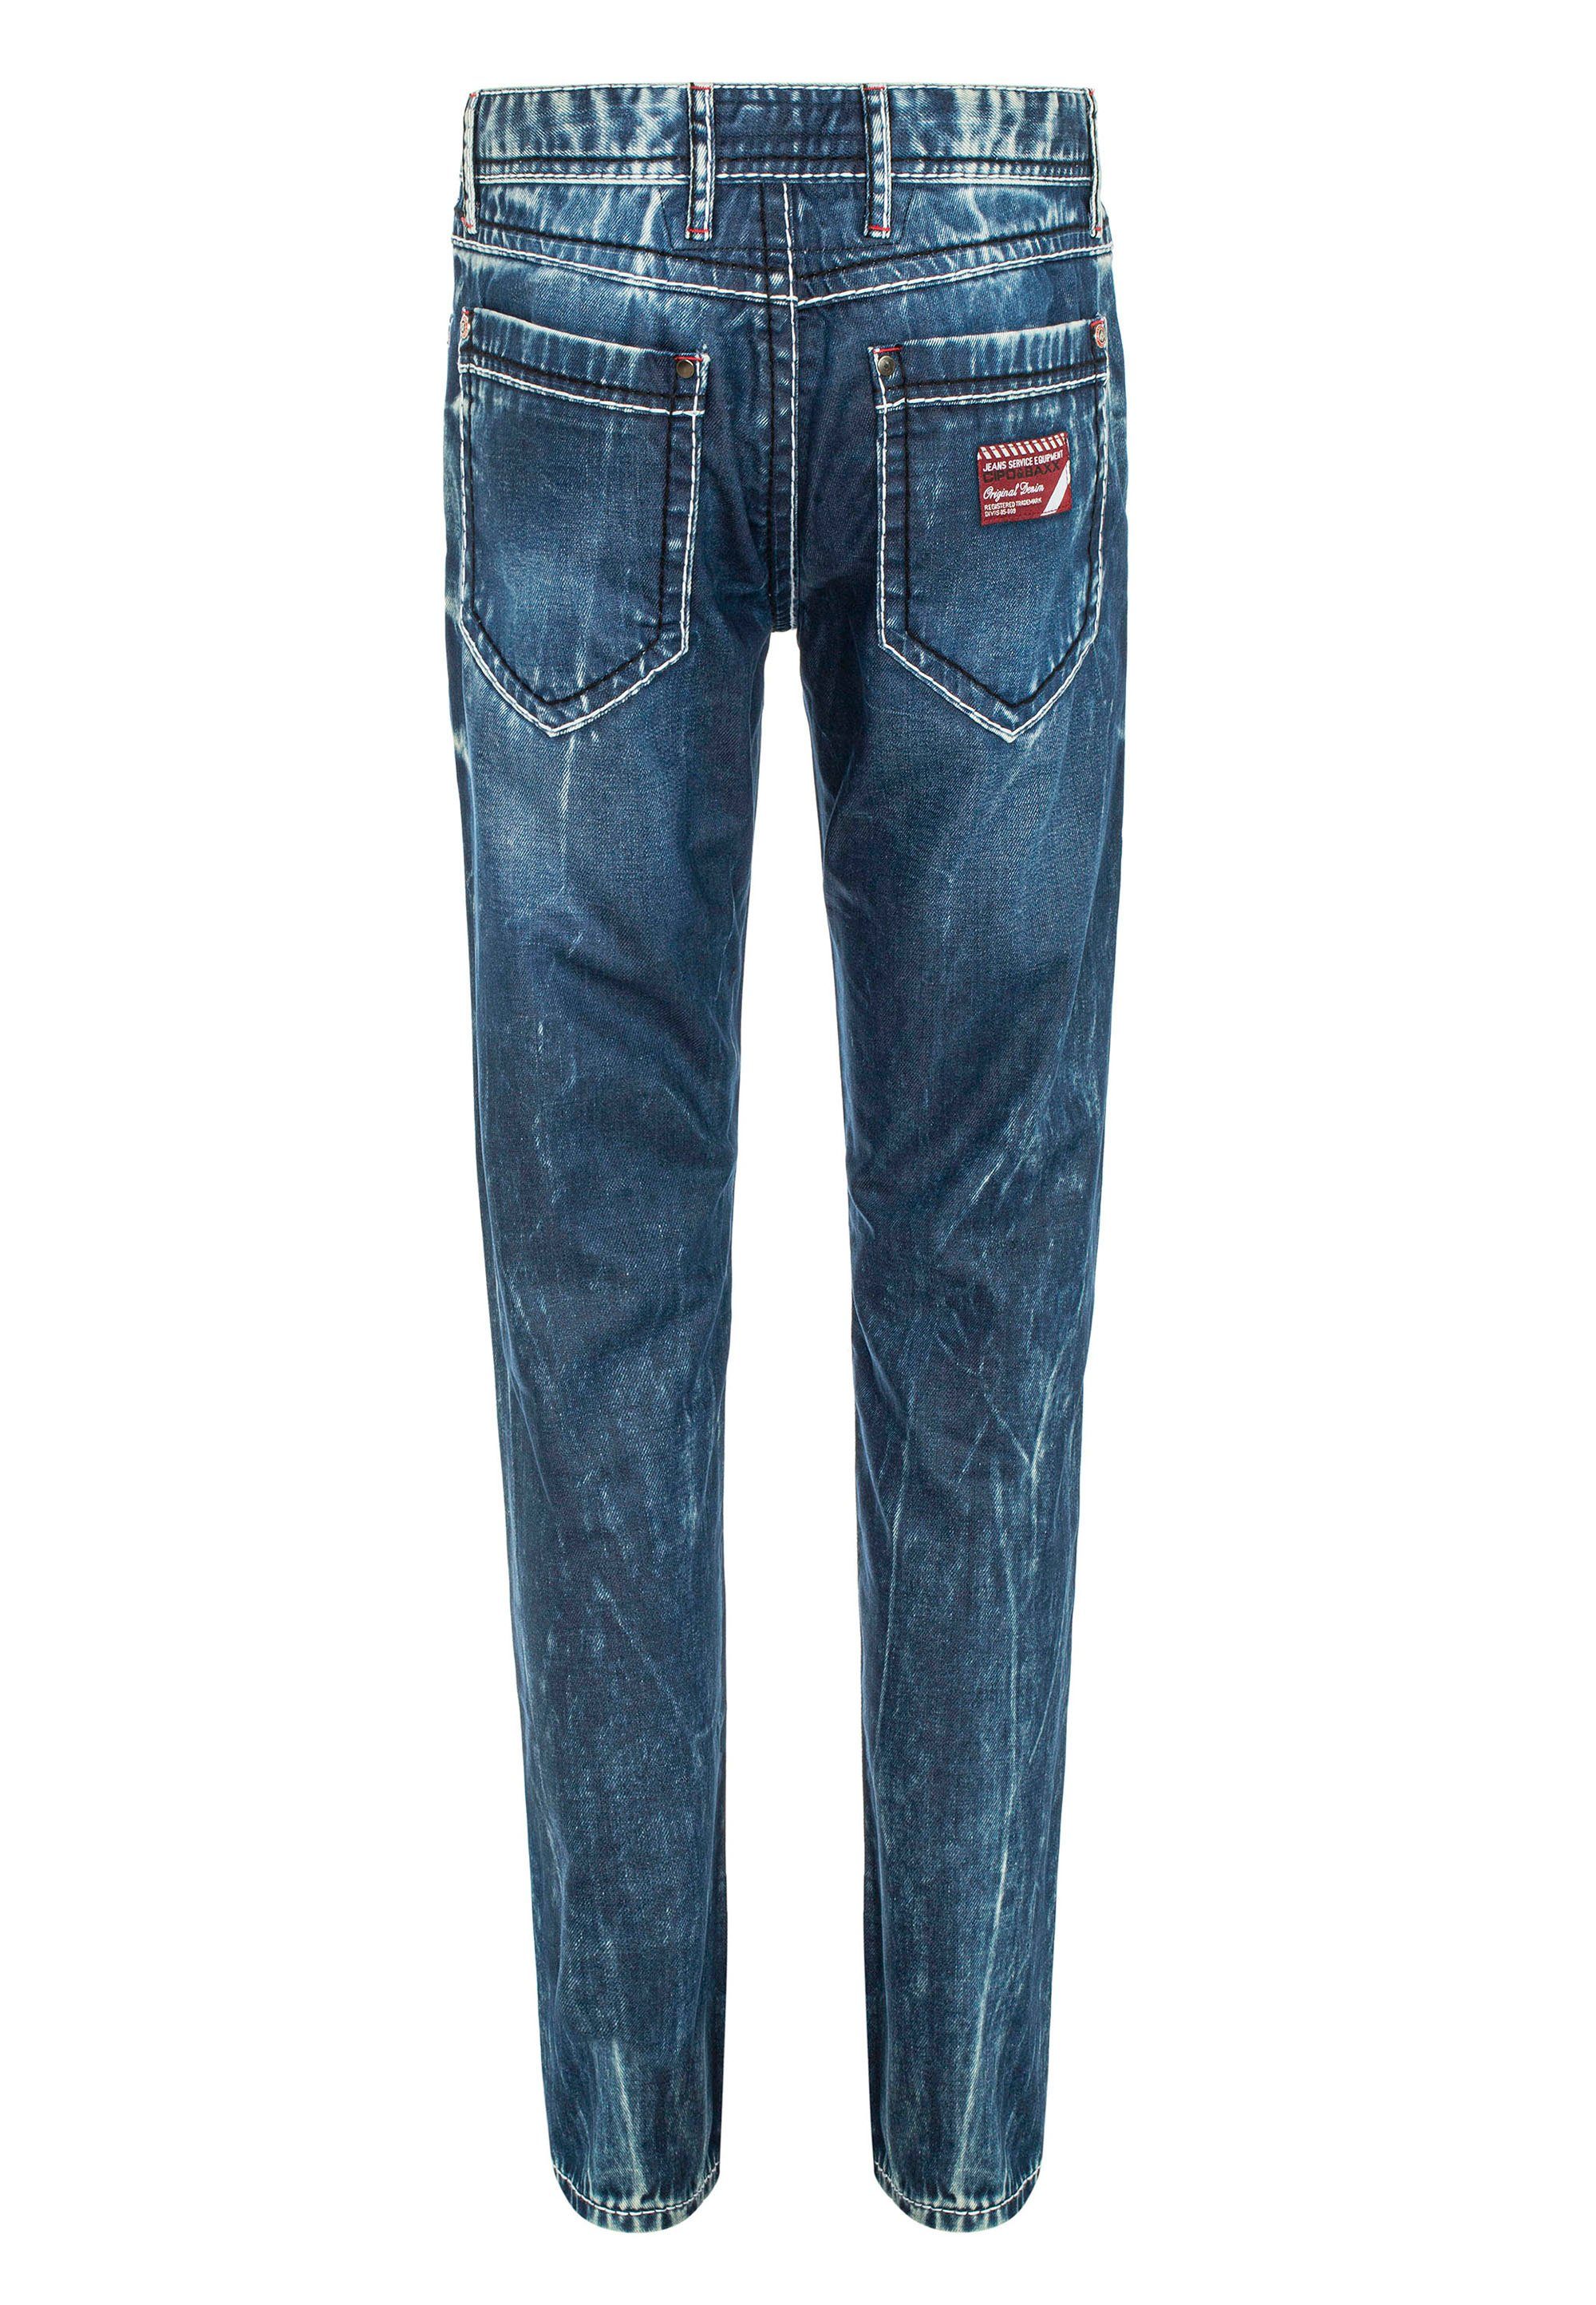 & Waschung Straight-Jeans extravaganter Baxx Cipo mit